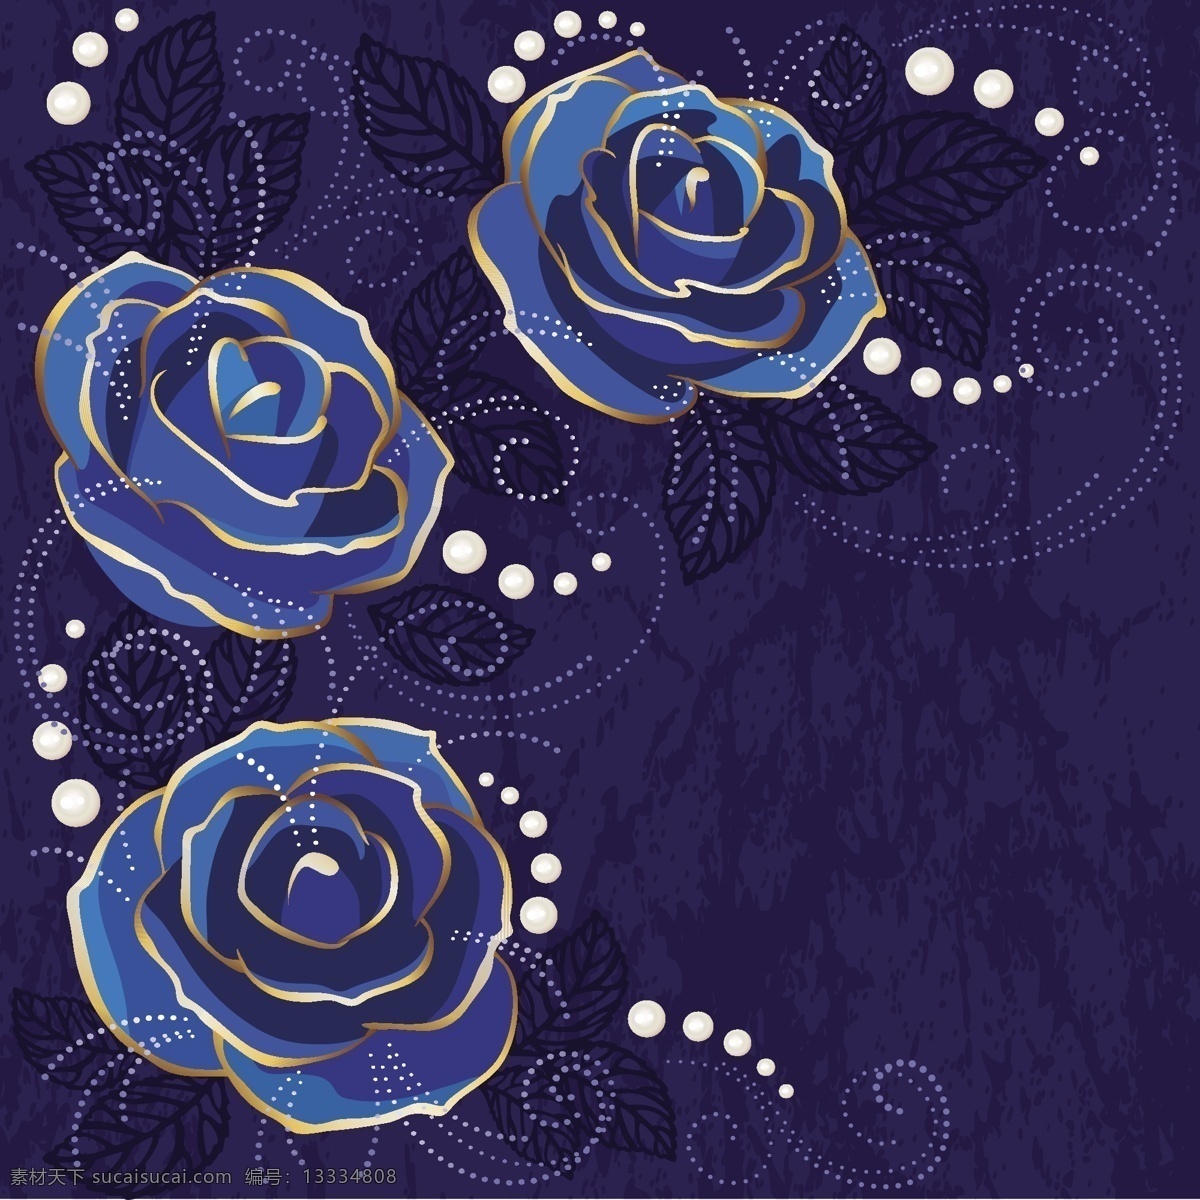 蓝色 玫瑰花 背景 矢量 eps格式 花纹 金边 蓝玫瑰 矢量图 珍珠 精美 含 预览 图 花纹花边